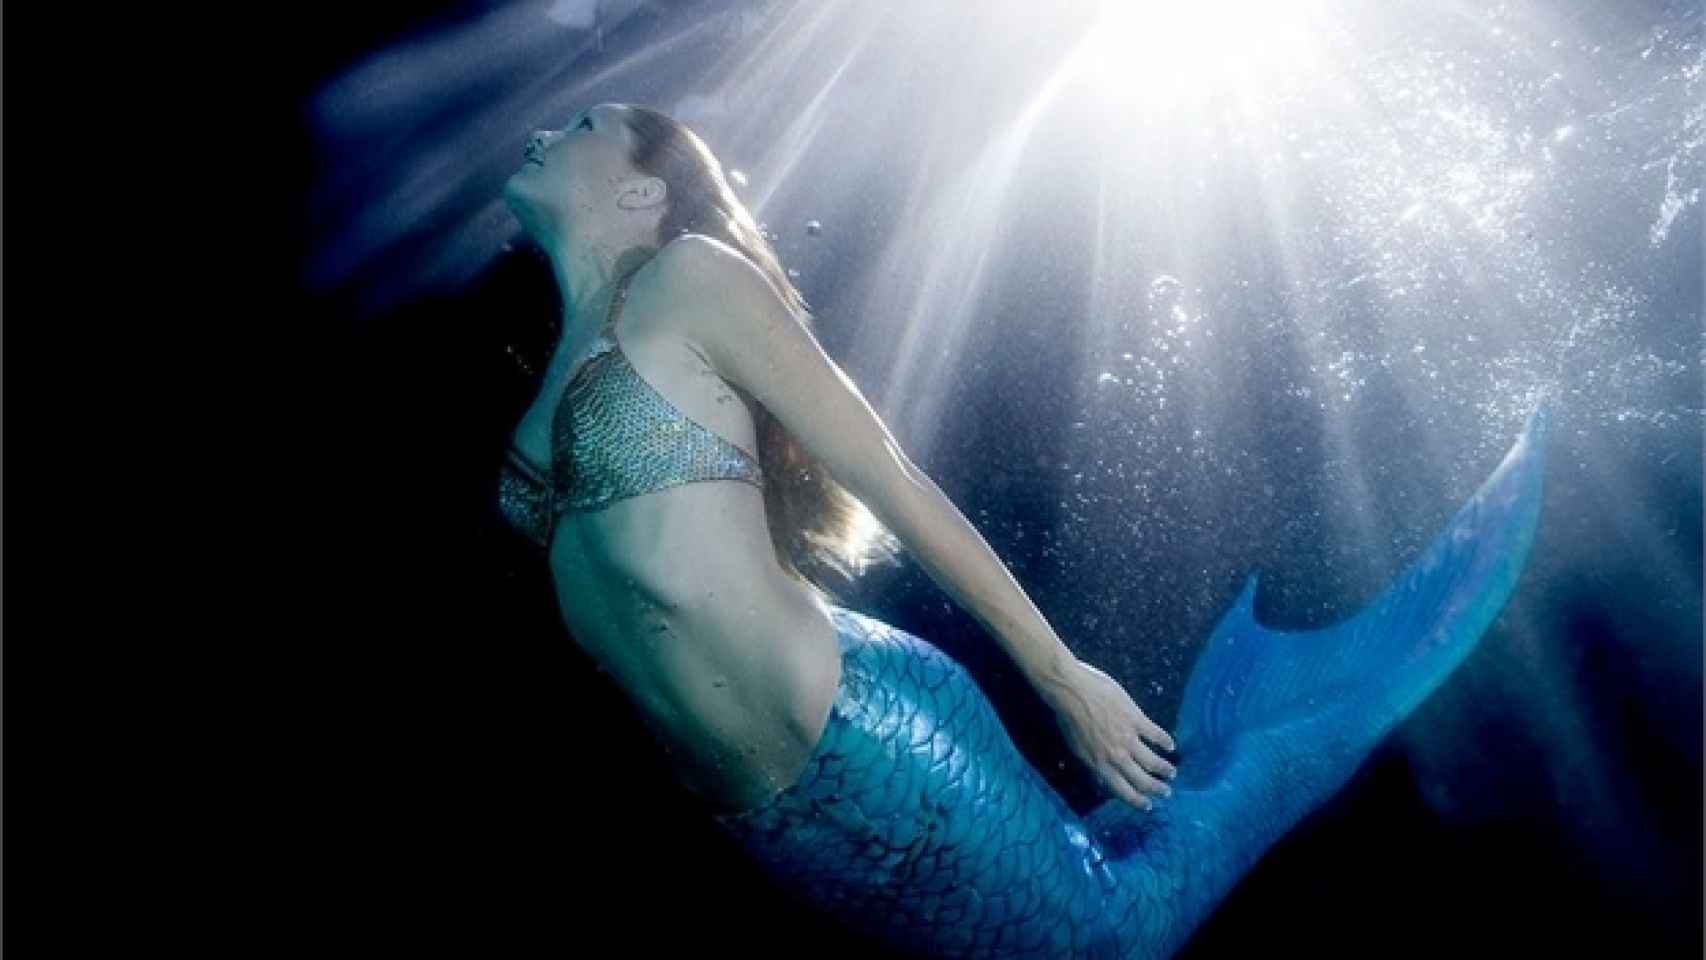 Lanzarote posee aguas cristalinas, idóneas para descubrir el mundo marino como una sirena.